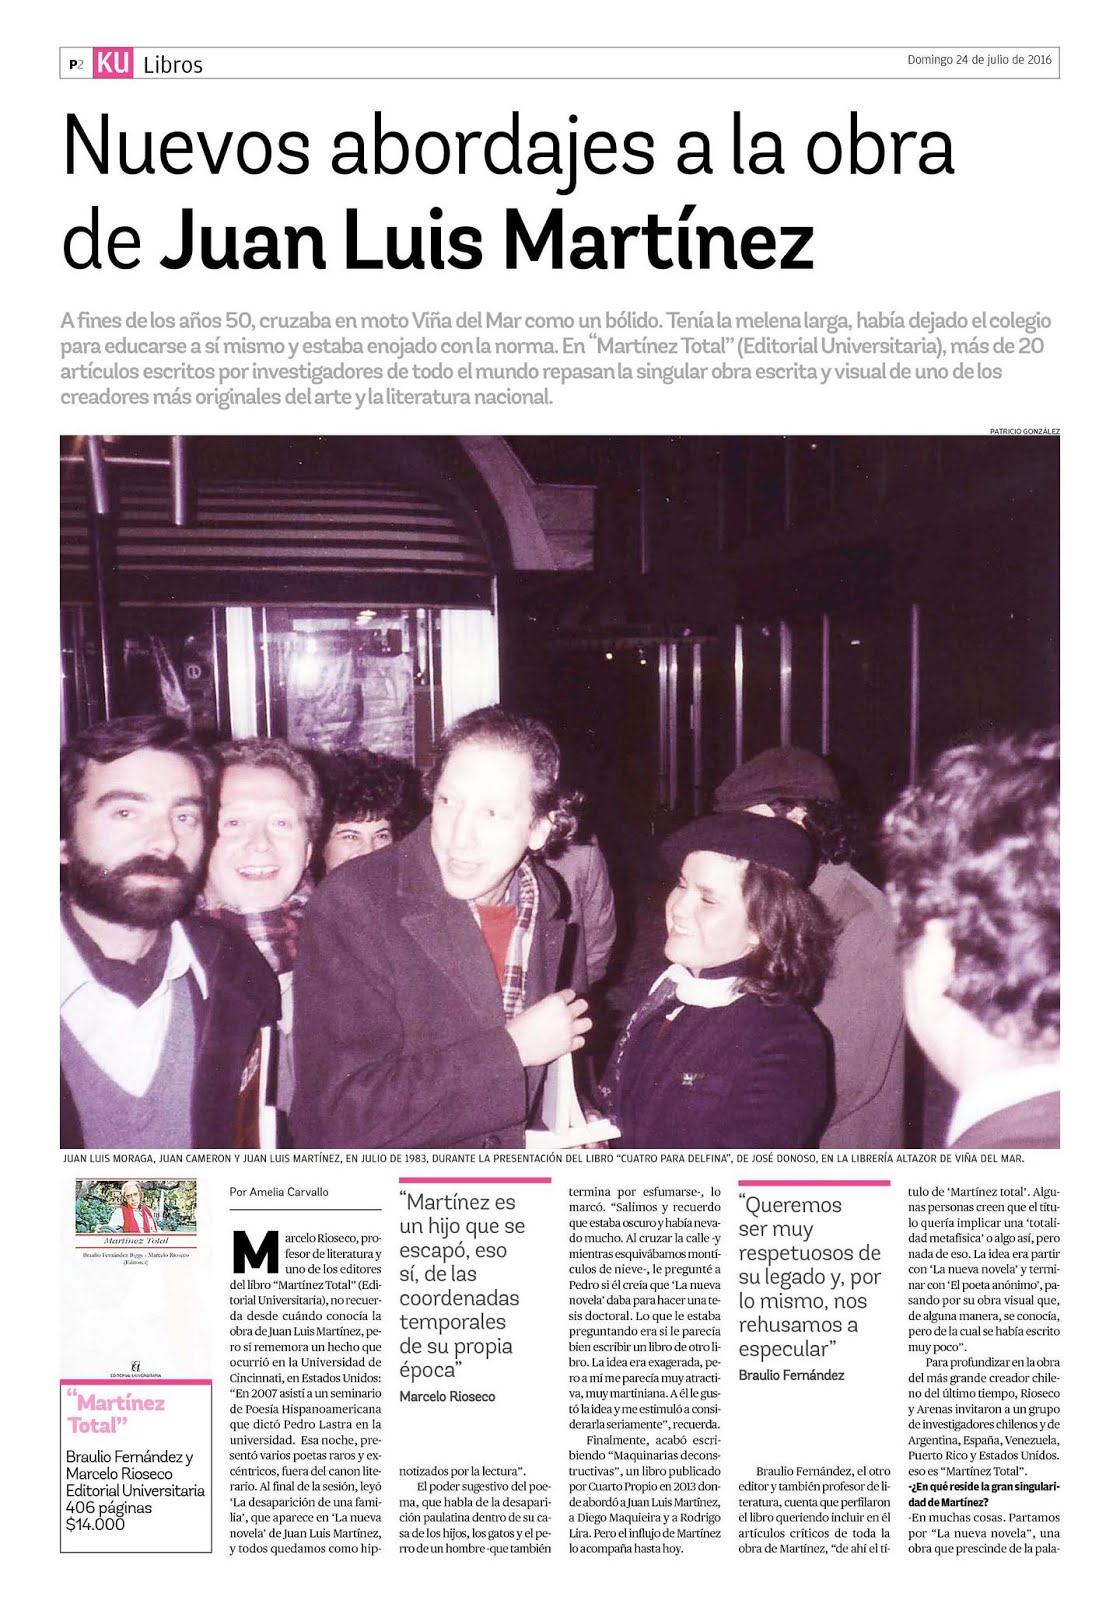 Martínez Total en los Mercurios regionales